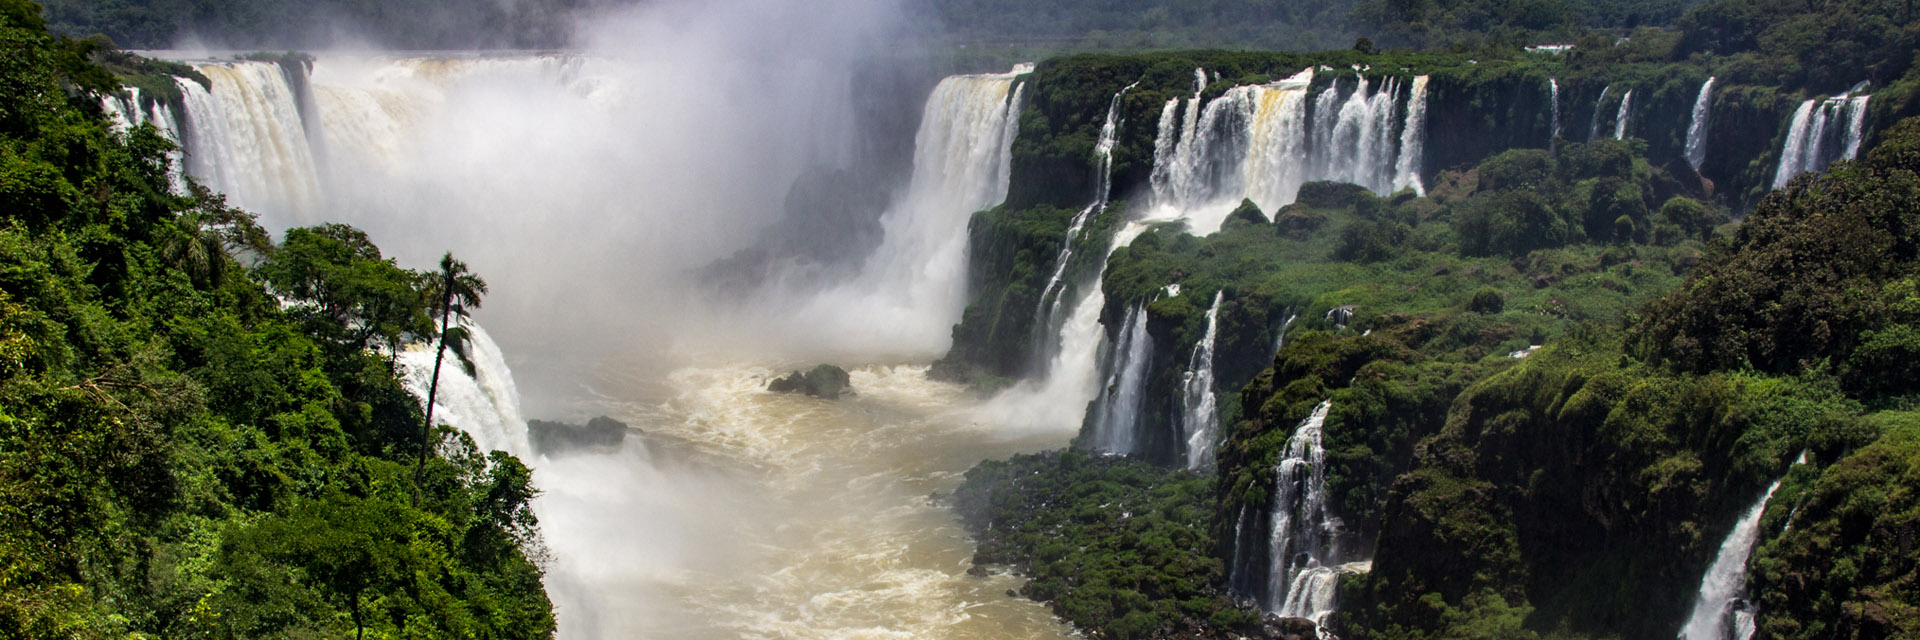 Cataratas do Iguaçu: lados brasileiro e argentino